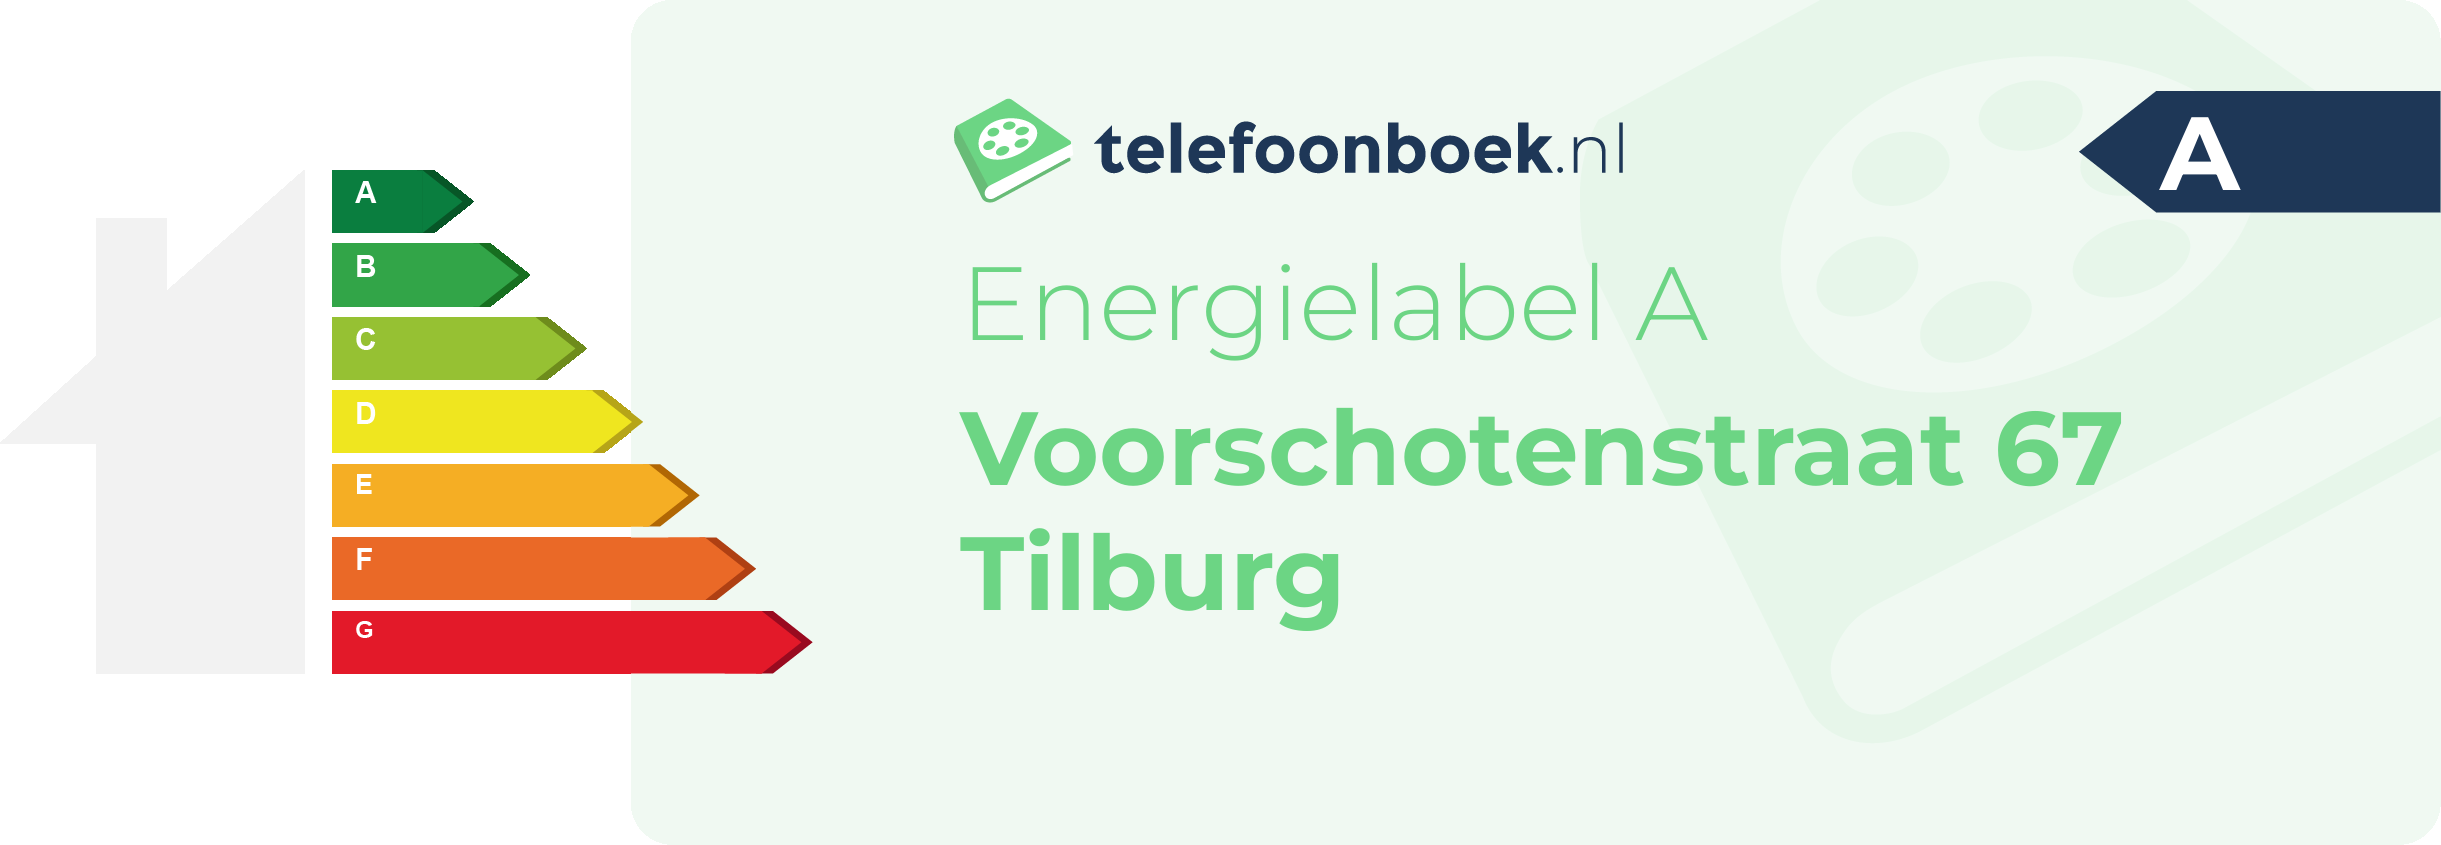 Energielabel Voorschotenstraat 67 Tilburg